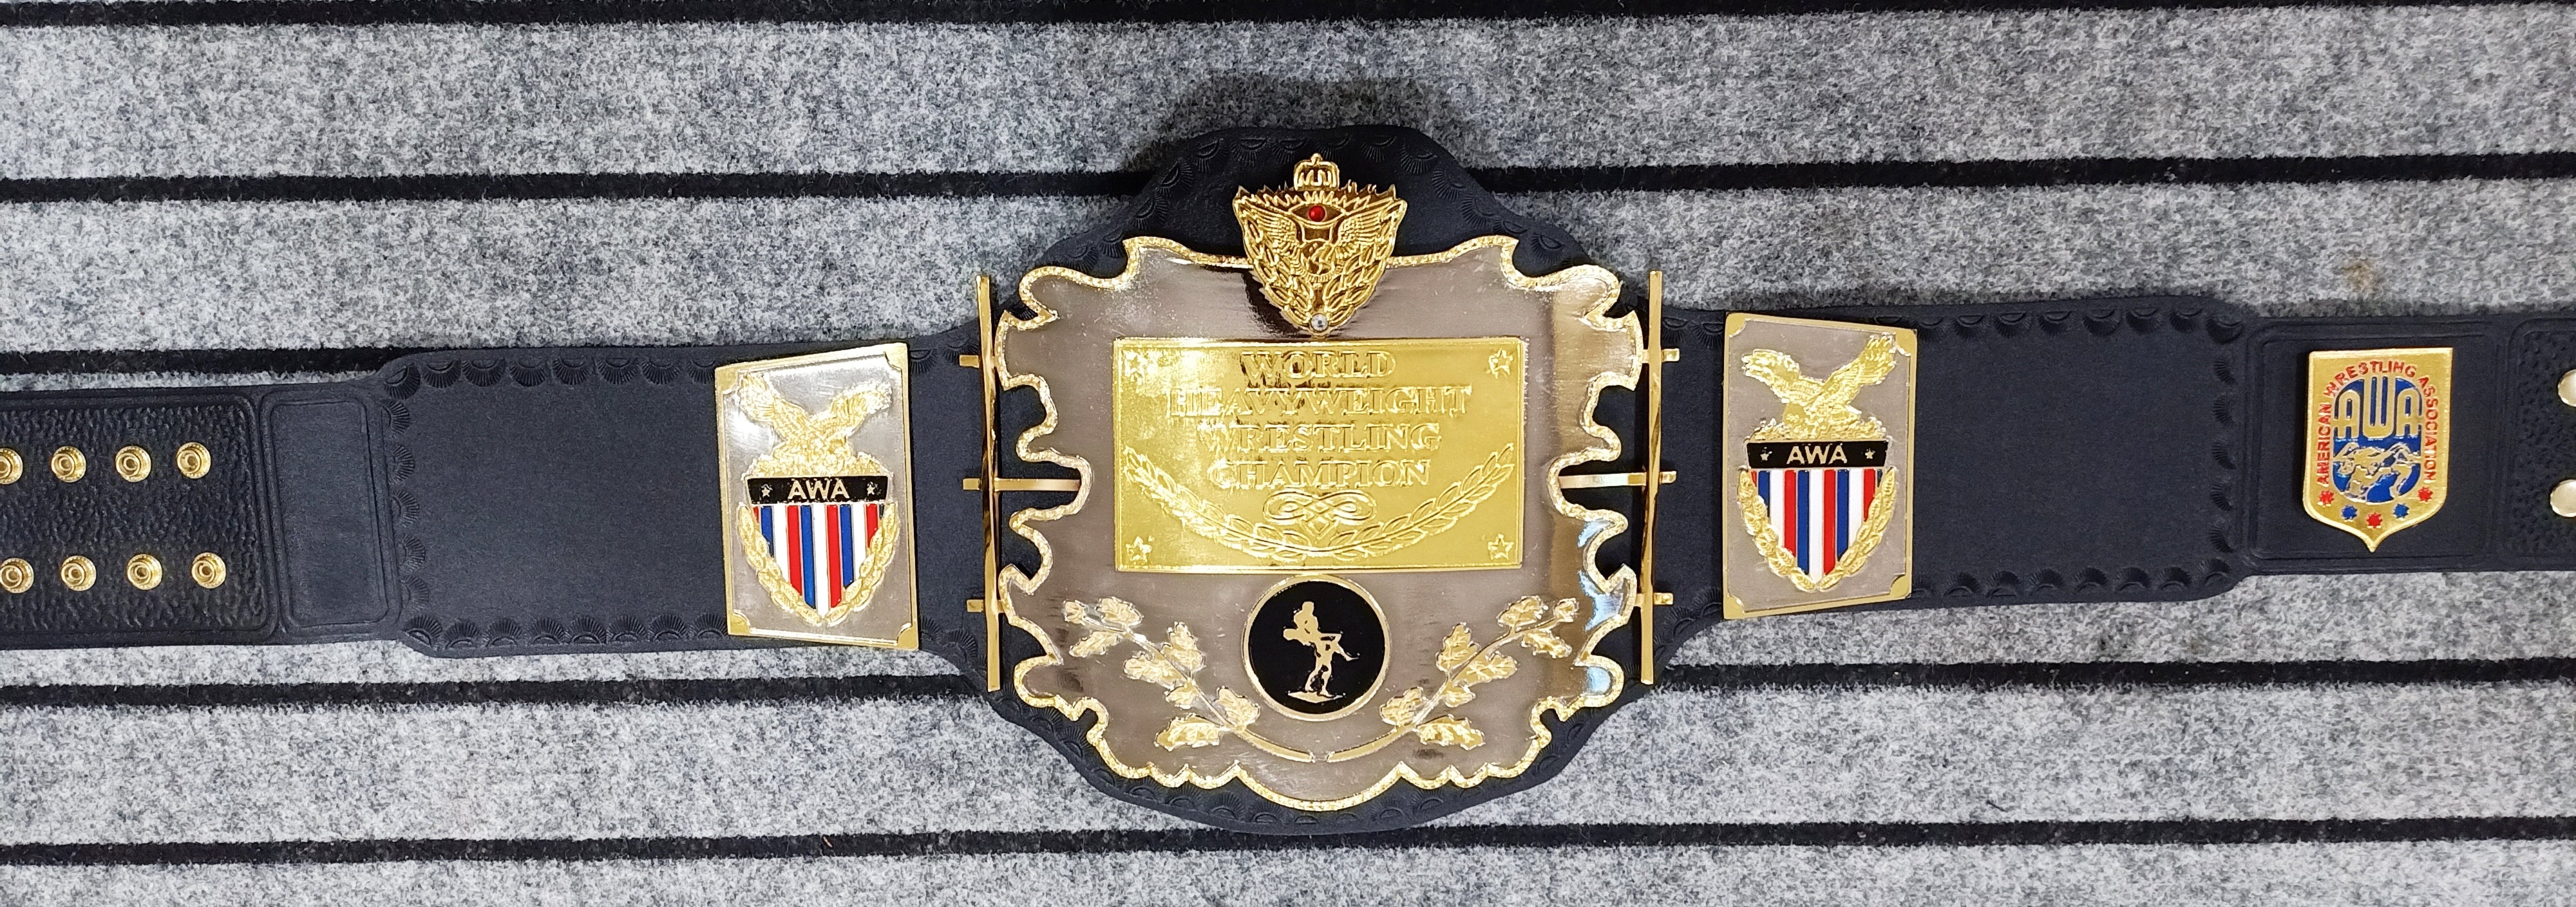 AWA WORLD HEAVYWEIGHT Championship Belt